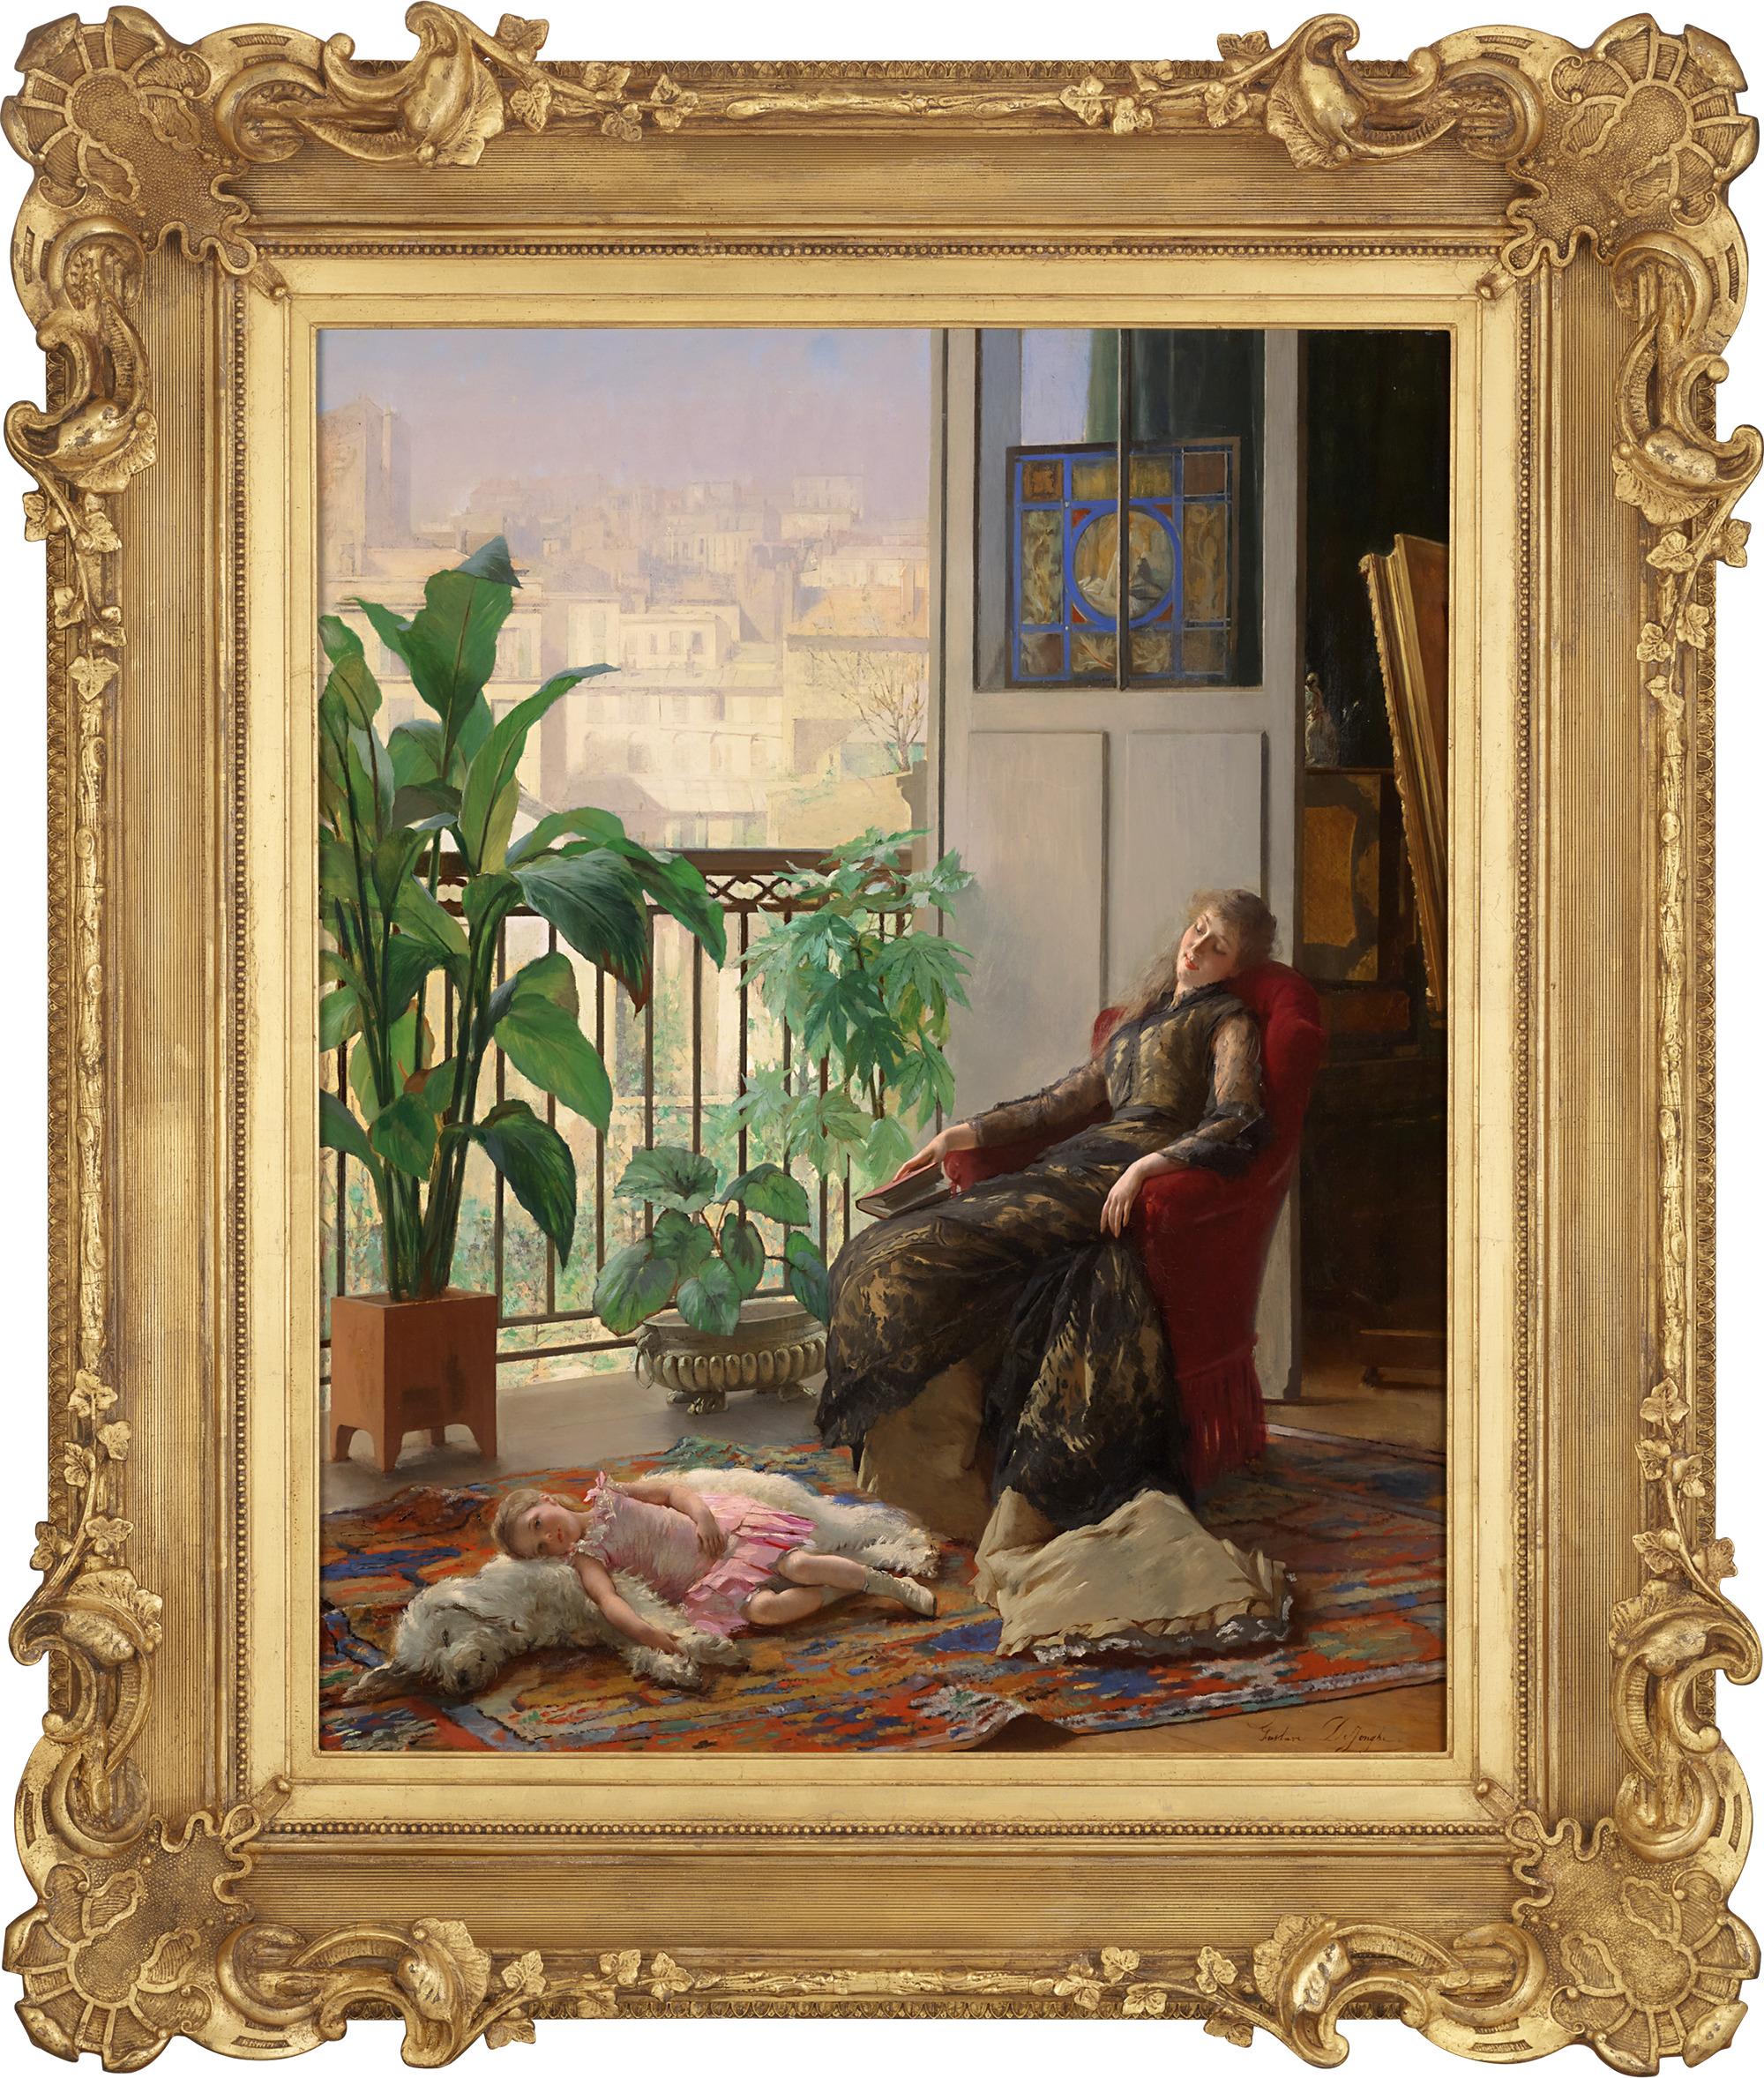 Nachmittagsruhe von Gustave Léonard De Jonghe – Painting von Gustave Léonard de Jonghe